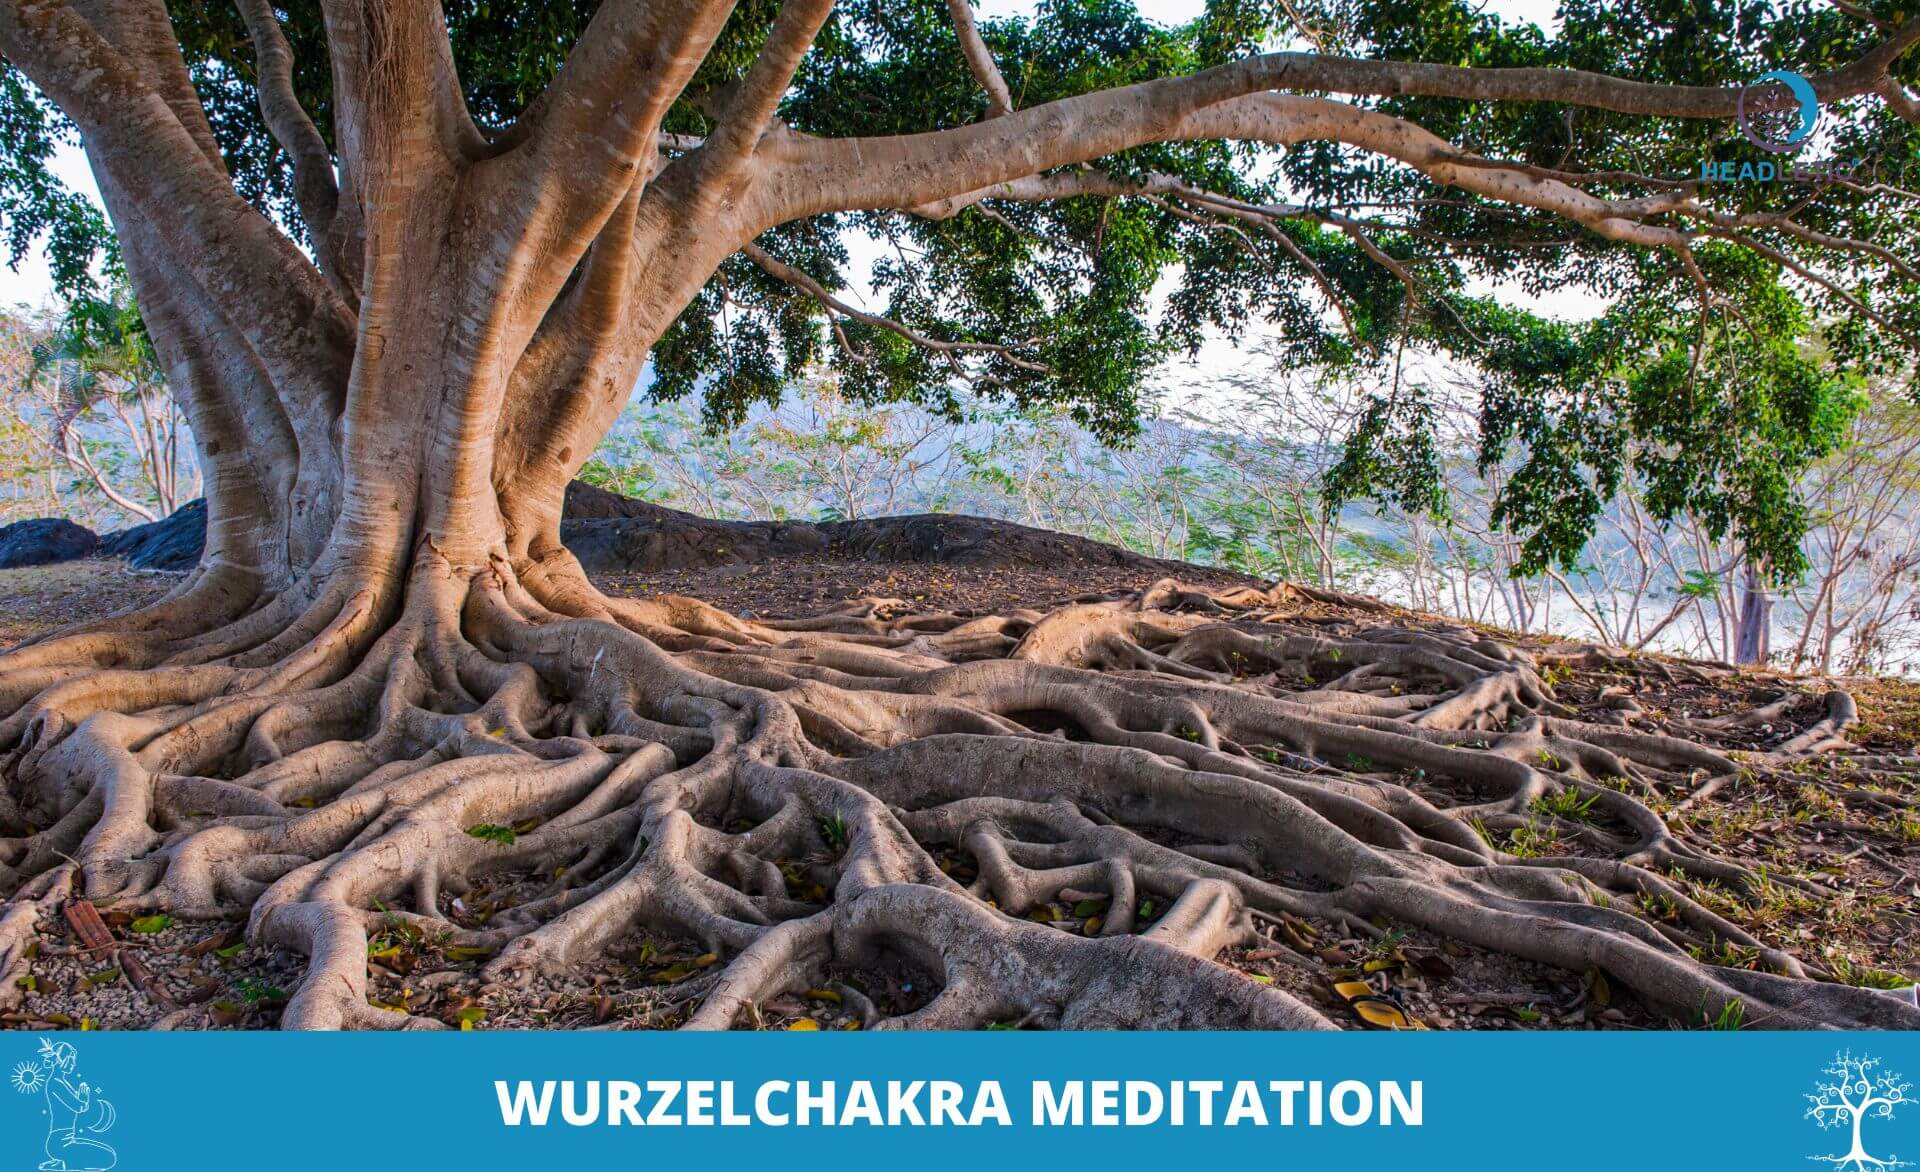 Entdecken Sie die tiefe und erdende Praxis der Wurzelchakra-Meditation, um sich mit den Wurzeln eines Baumes zu verbinden und Ihre Seele zu nähren.